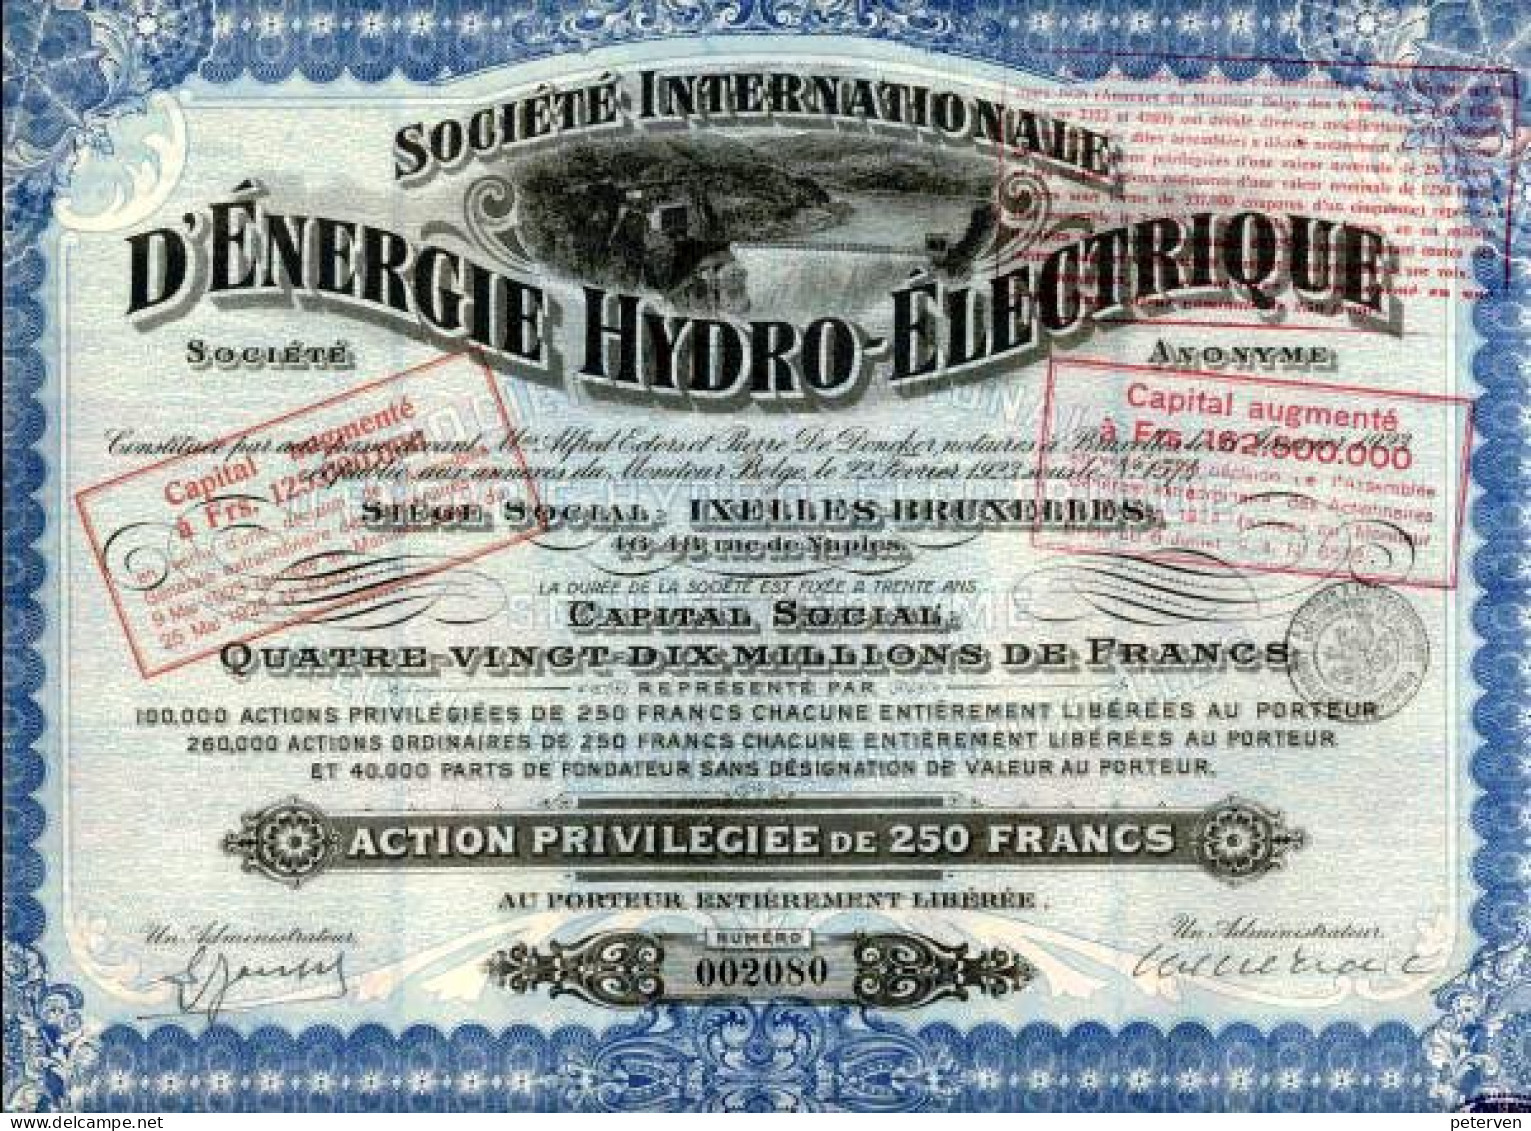 INTERNATIONALE D'ÉNERGIE HYDRO-ÉLECTRIQUE (SIDRO); Action Privilégiée - Water